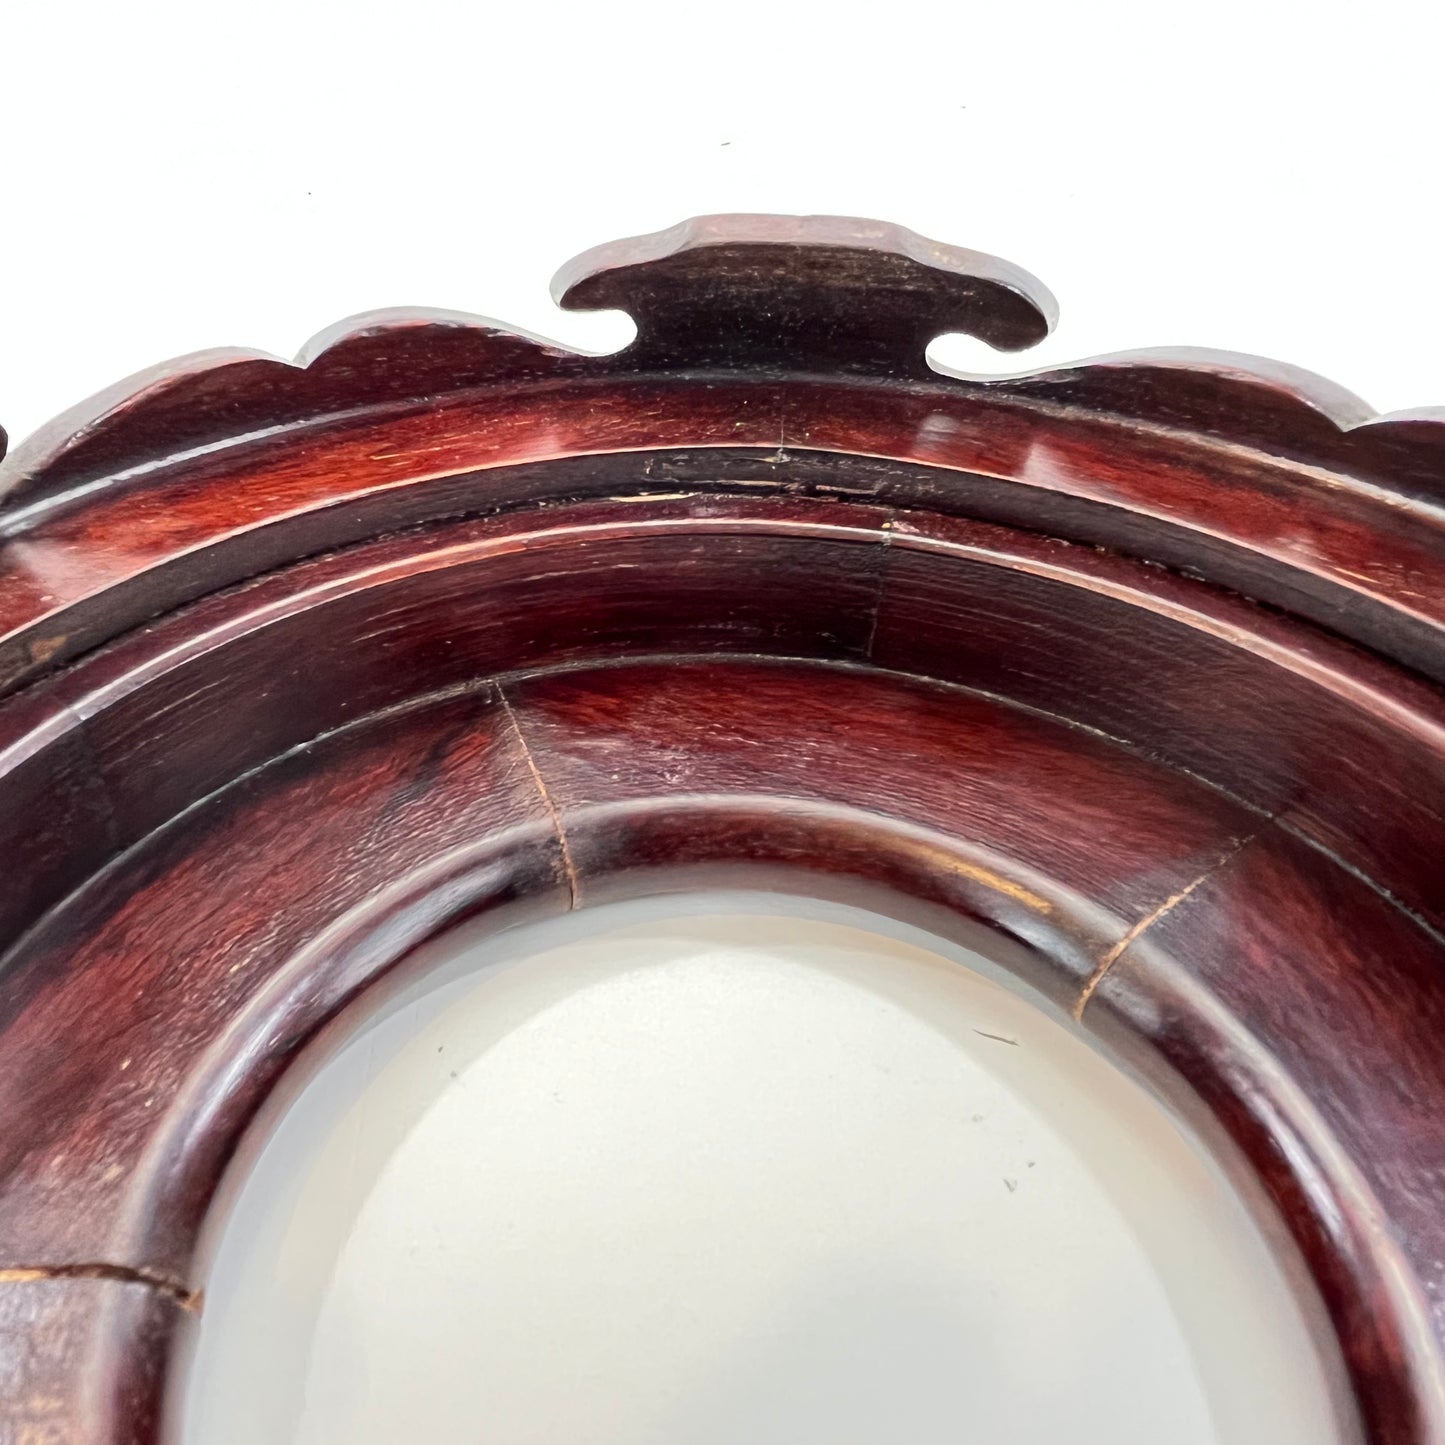 Vintage Chinese Vase Bowl Stand Red Pedestal Display For 3" Bowl Or Vase